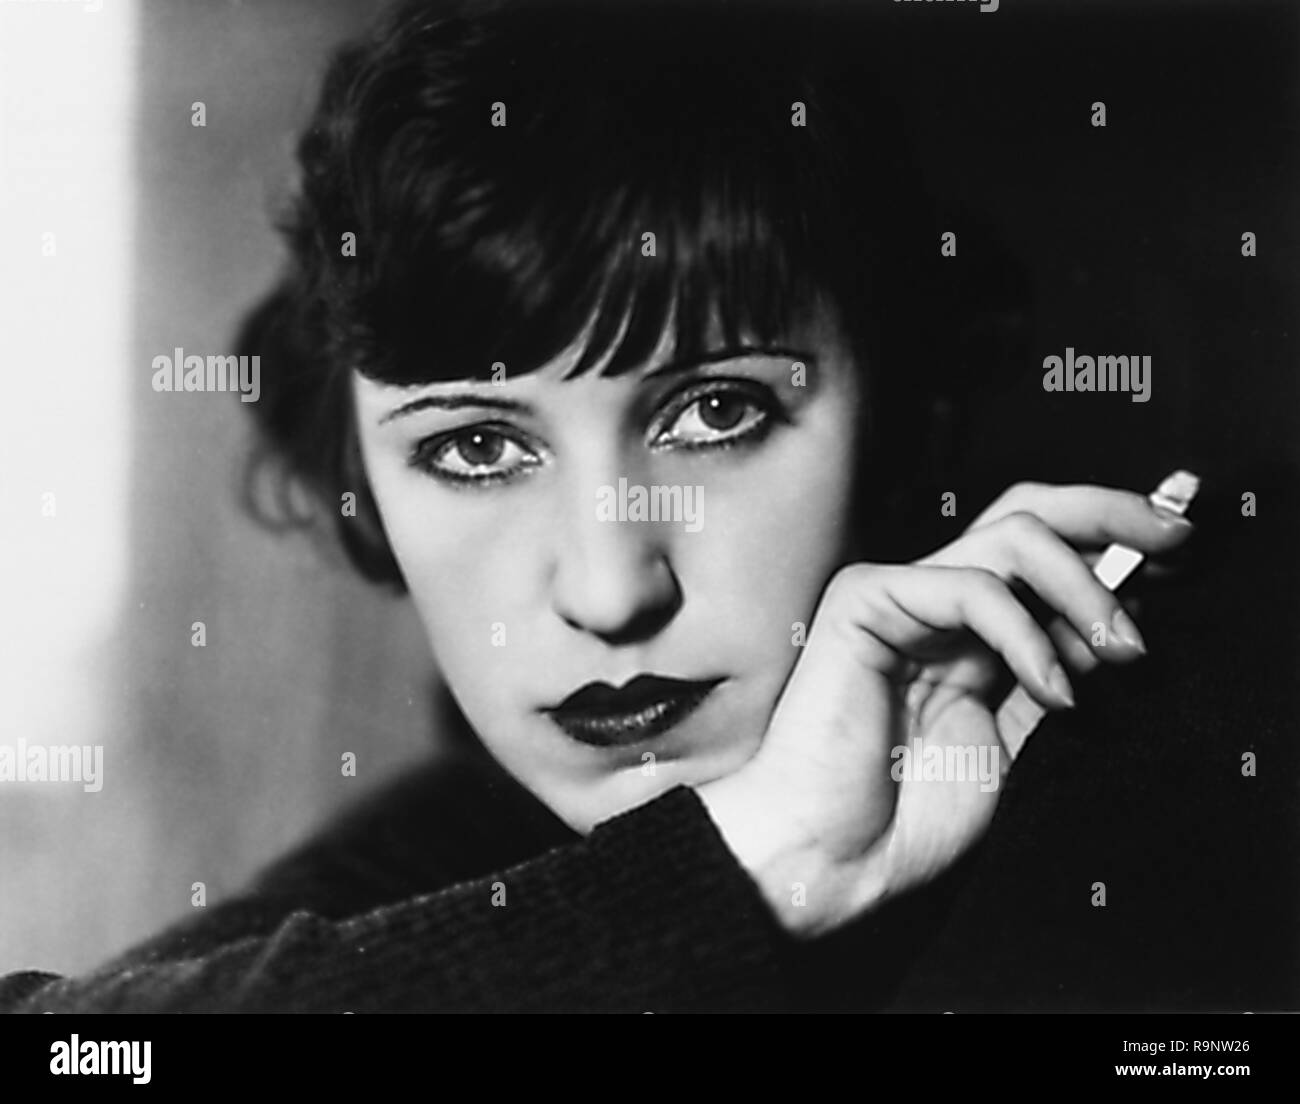 Cigarette Actress Banque d'image et photos - Alamy